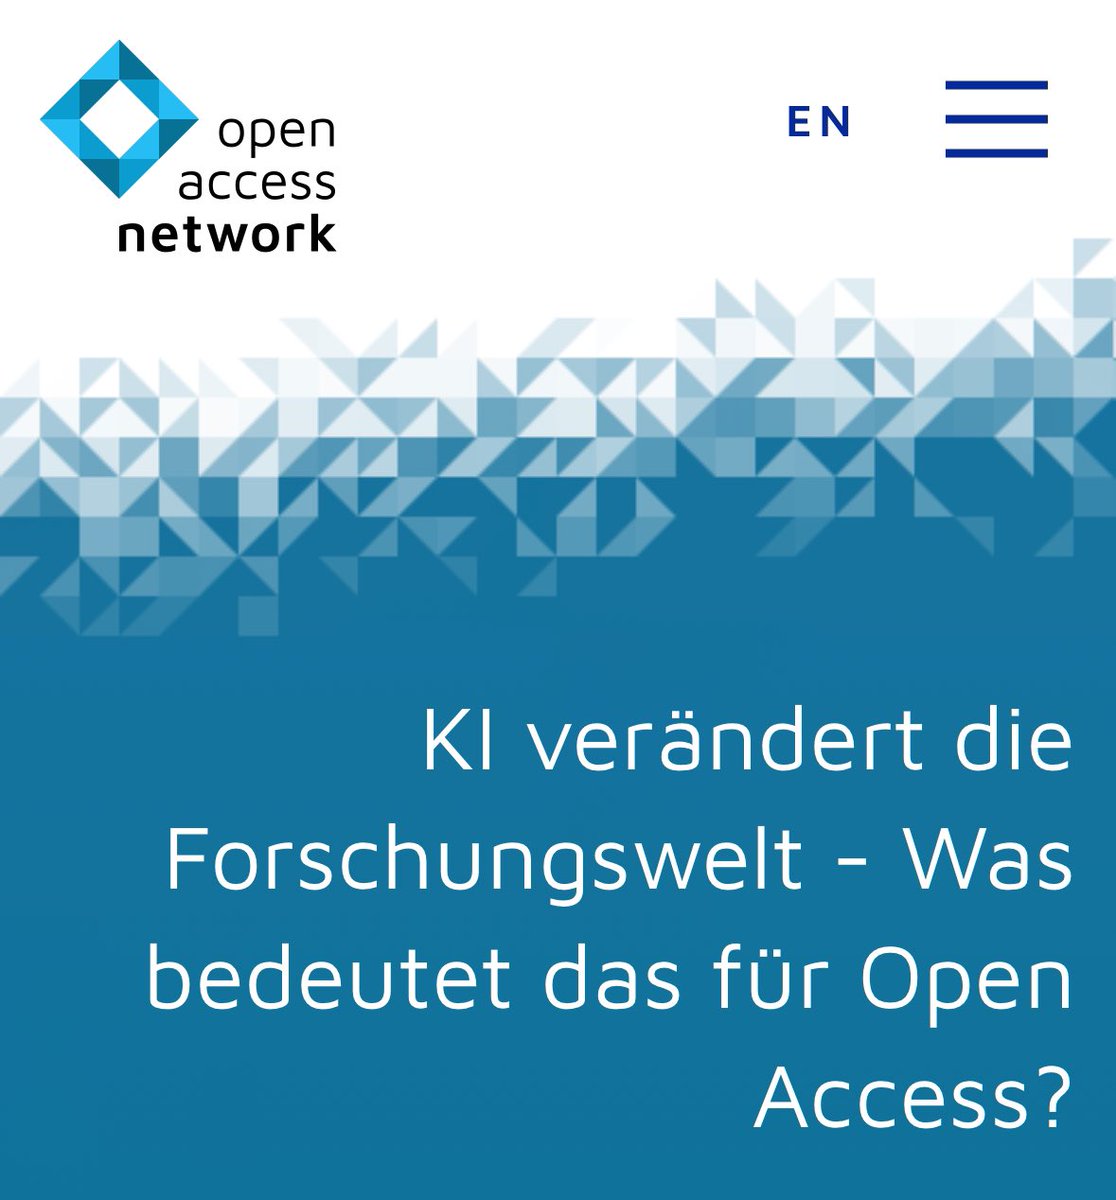 #KI verändert die Forschungswelt - Was bedeutet das für #OpenAccess?
Von Carolin Becklas, Linda Martin & Helene Strauss. 

Viel versprechender Auftakt einer Reihe von Blogposts von open-access.network:
open-access.network/blog/ki-veraen… #OpenResearch